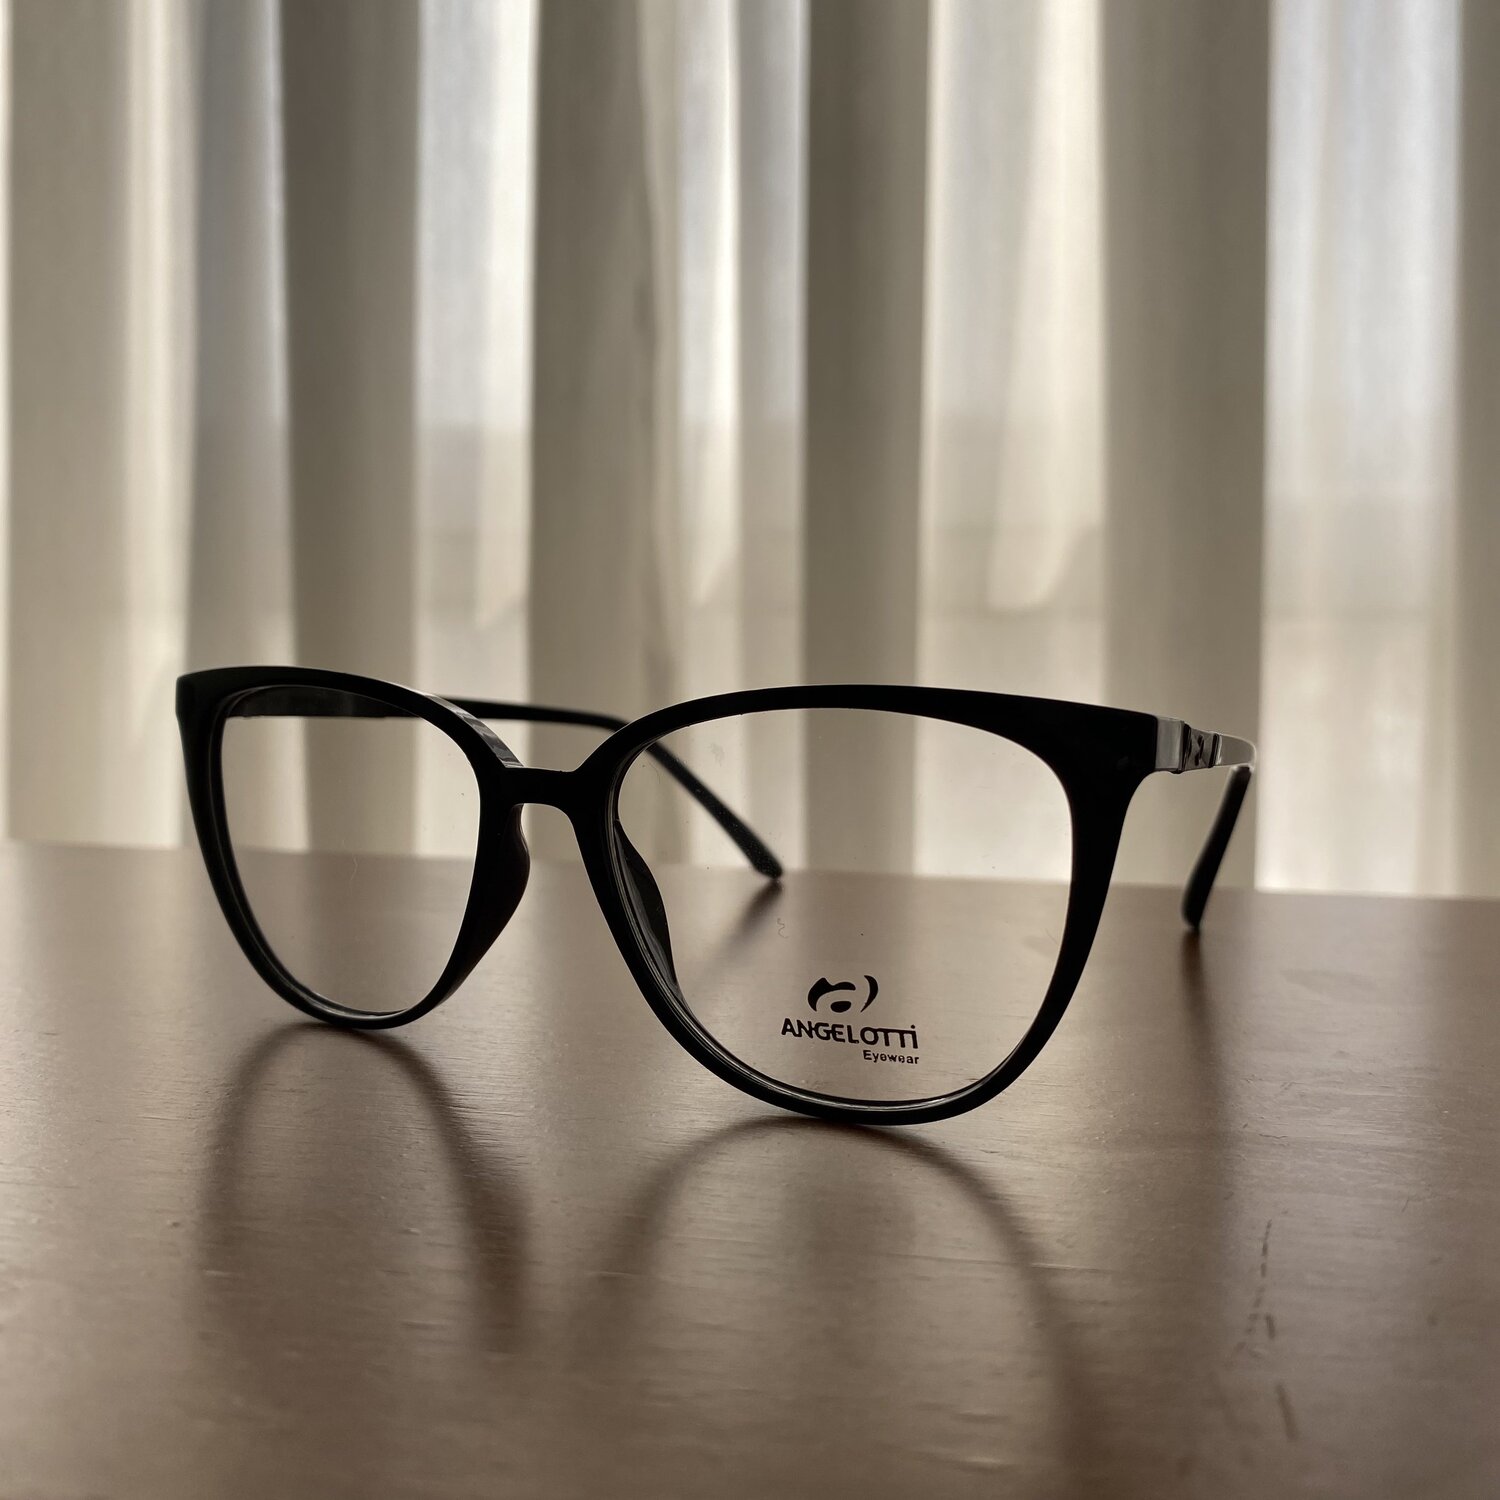 فریم عینک طبی زنانه مدل 55020